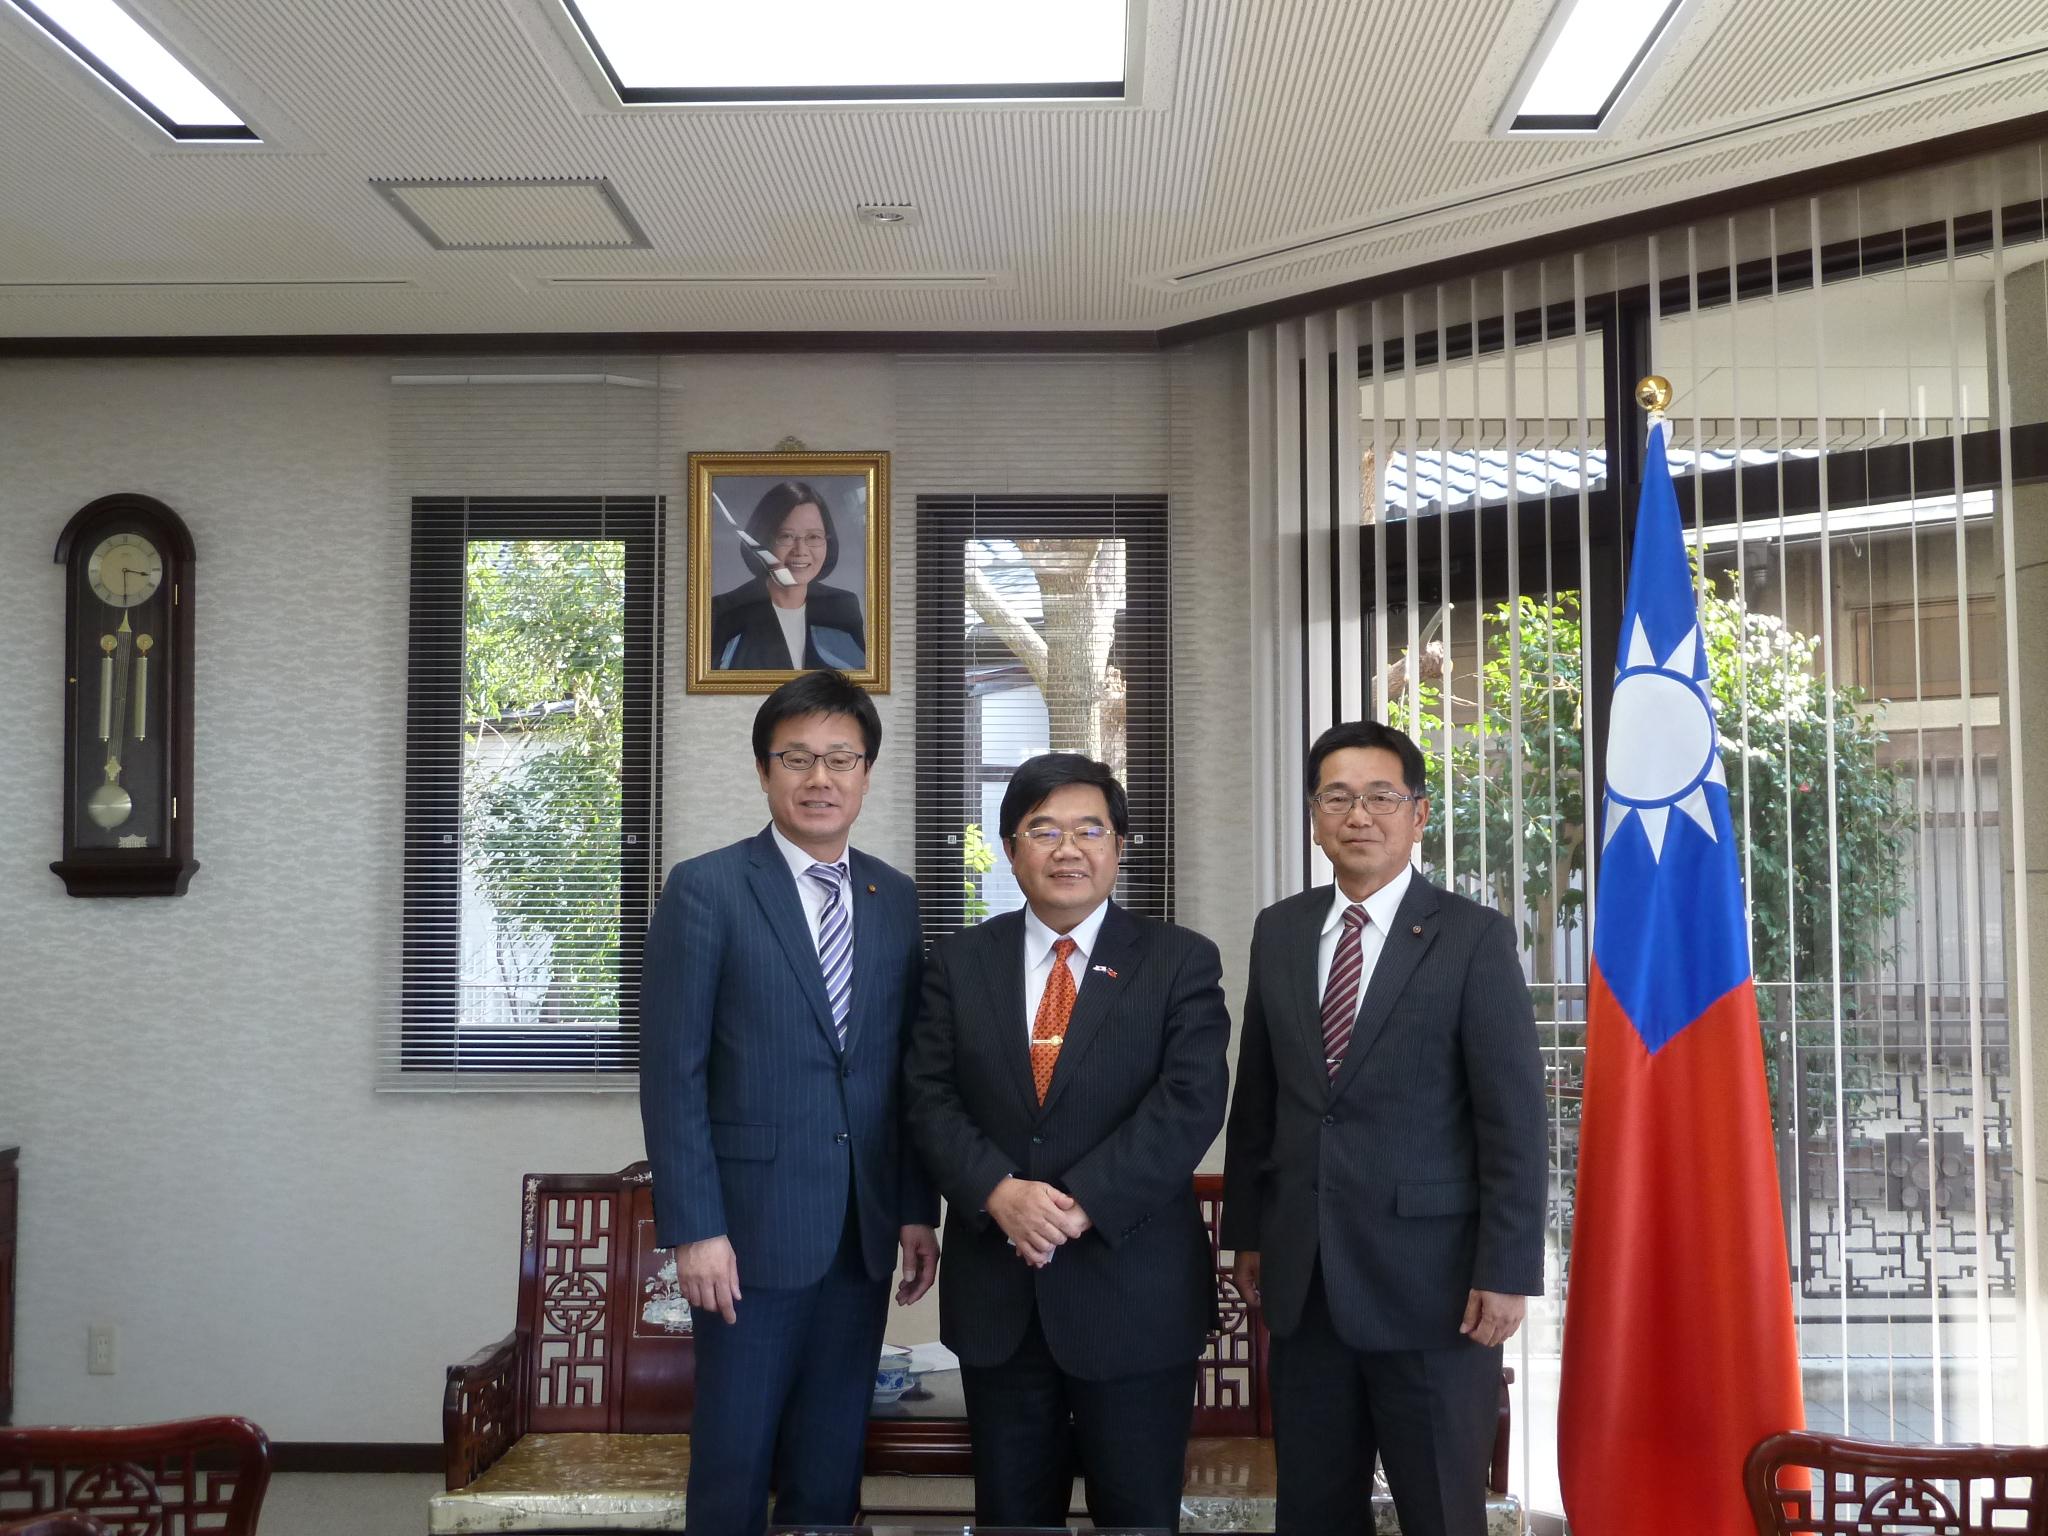 熊本市議会中華民国友好議員連盟会長原口亮志（右）、副会長高本一臣（左）